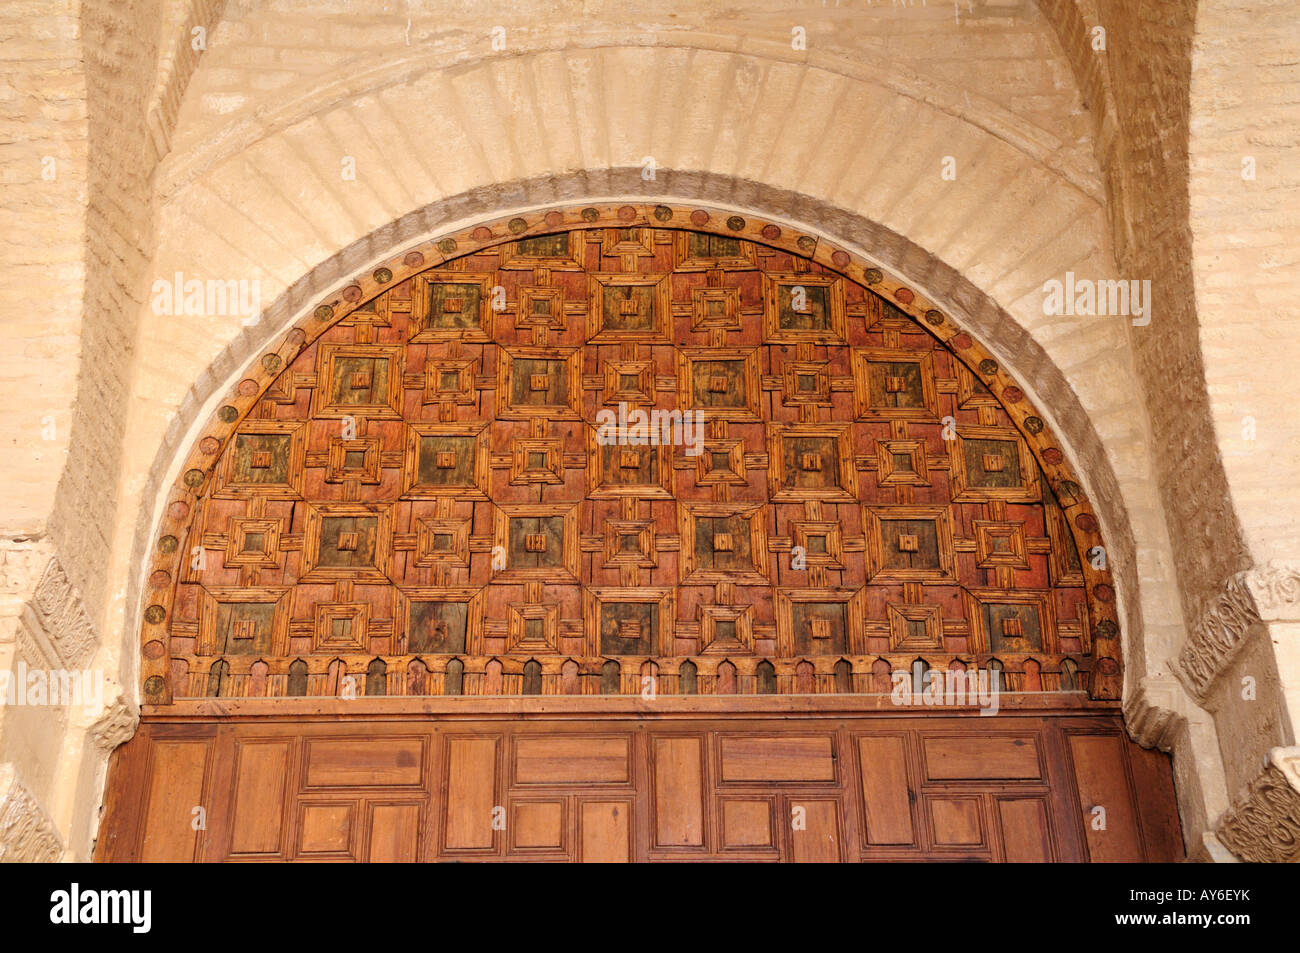 Panneaux en bois au-dessus des portes, salle de prière de la grande mosquée de Kairouan, Tunisie Banque D'Images